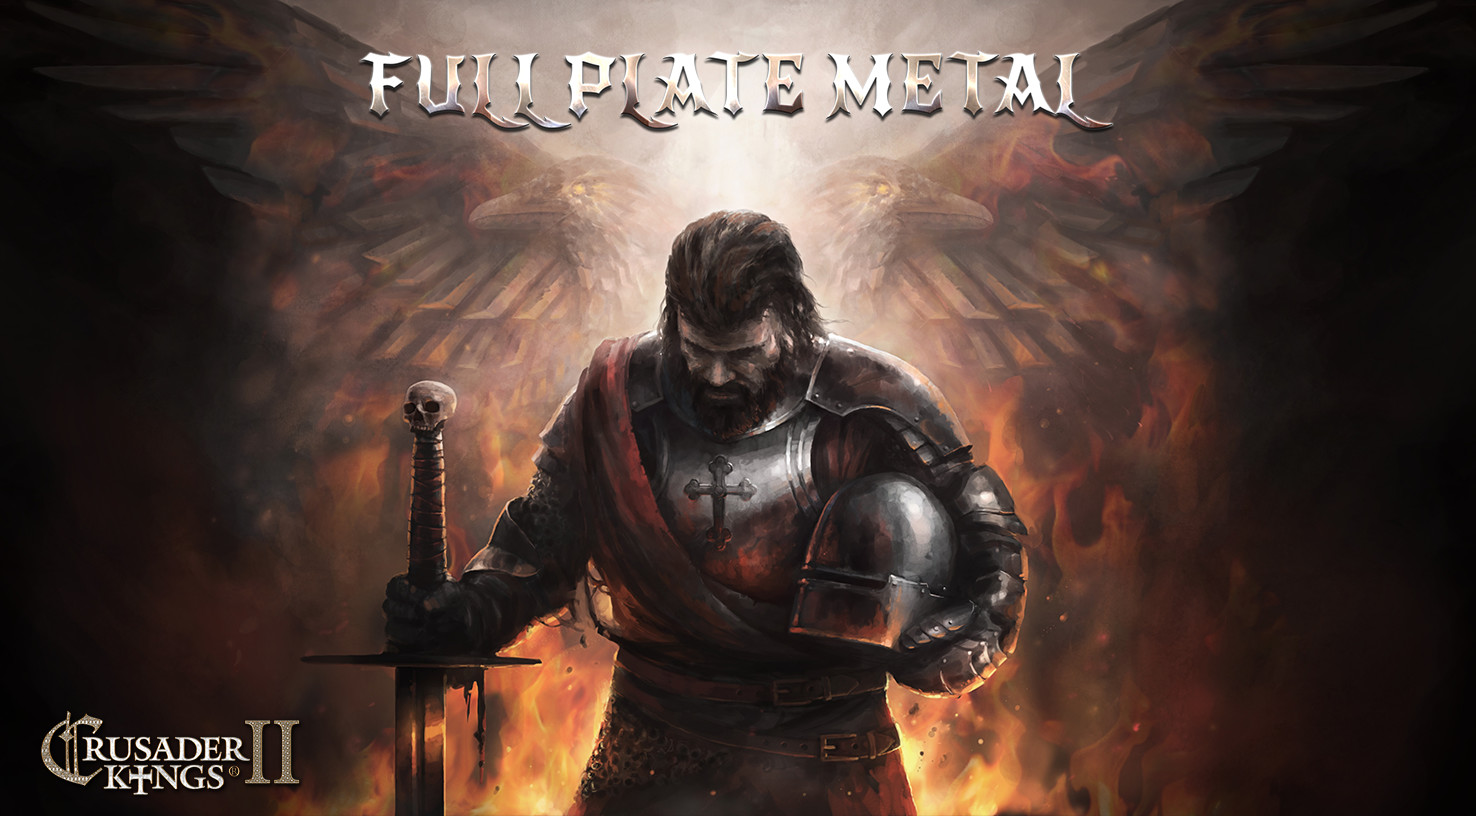 Crusader Kings II - Full Plate Metal DLC Steam CD Key 1.84$